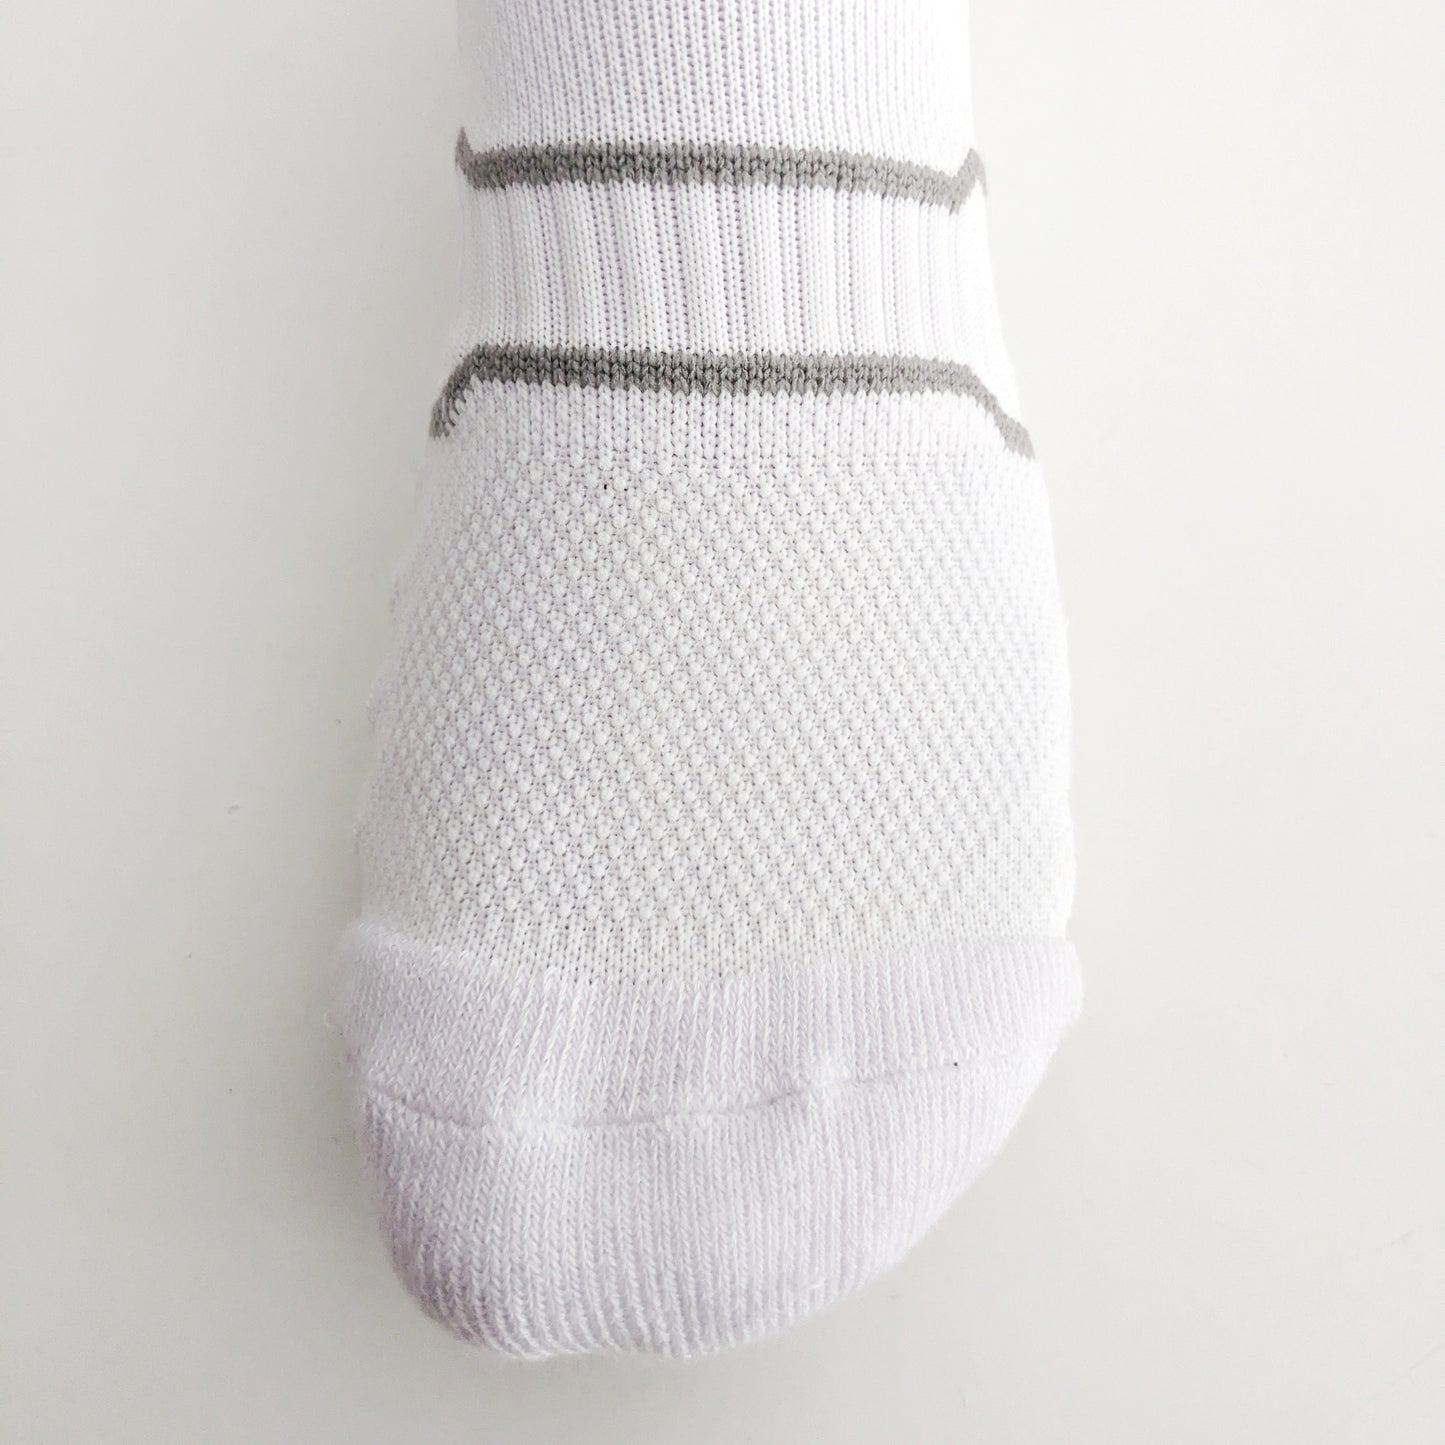 Foadacy Extra Comfort Daily Ankle Socks | Men Socks | Women Socks